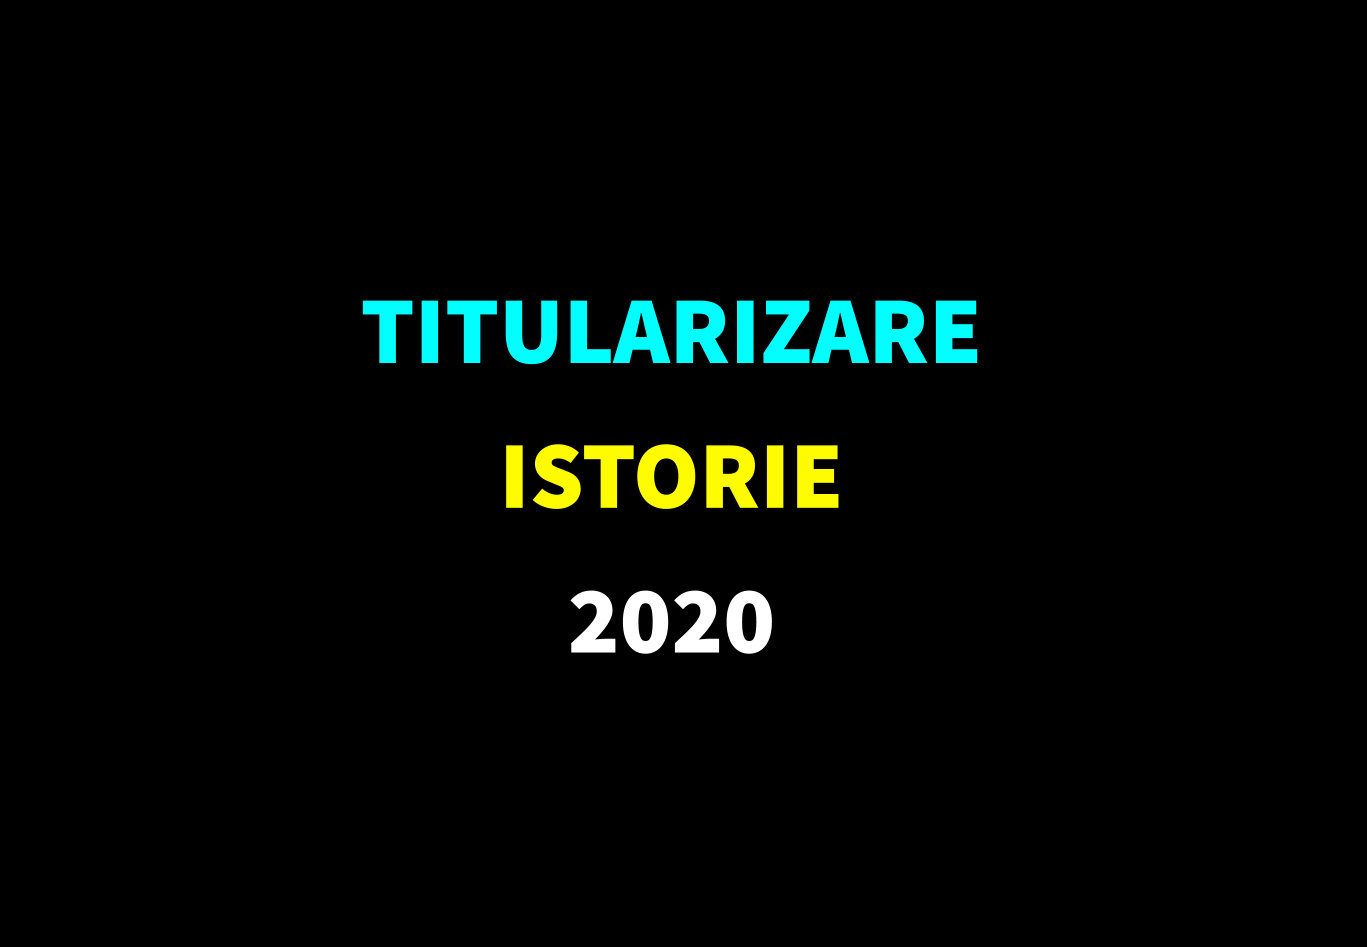 Titularizare istorie 2020